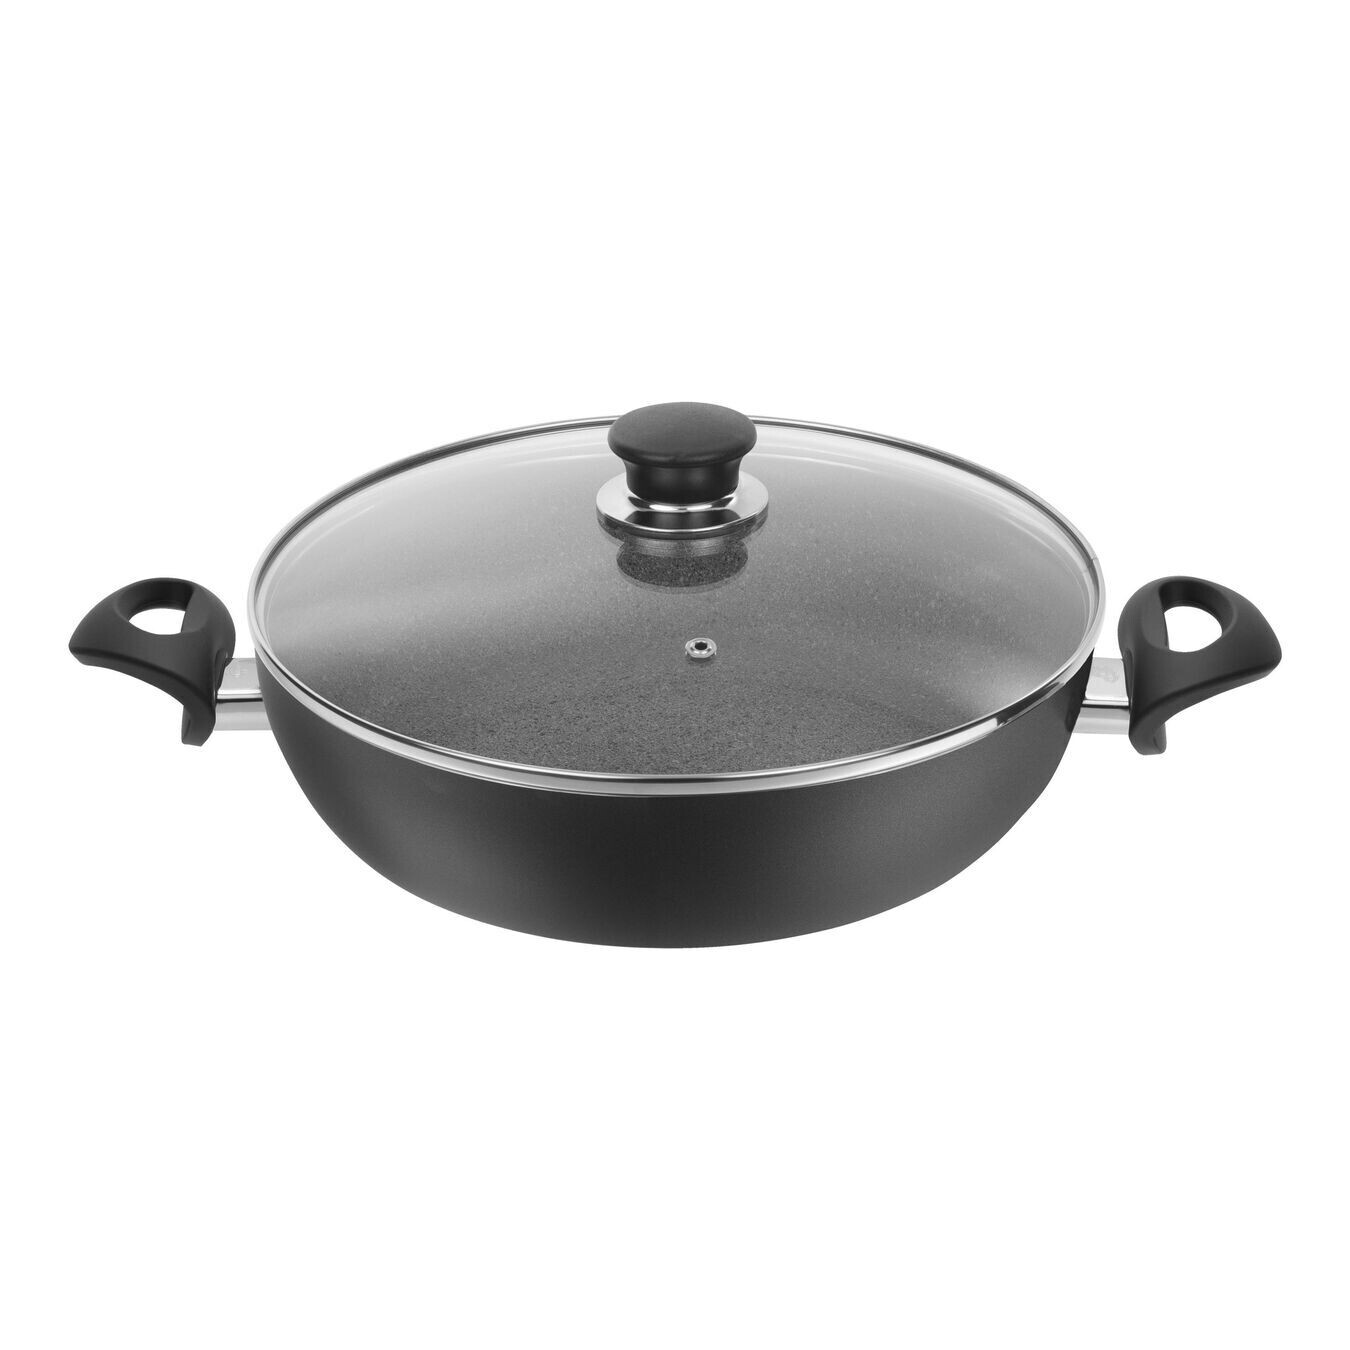 Ballarini Bologna Saute Pan with lid 28cm/11in 3.6L